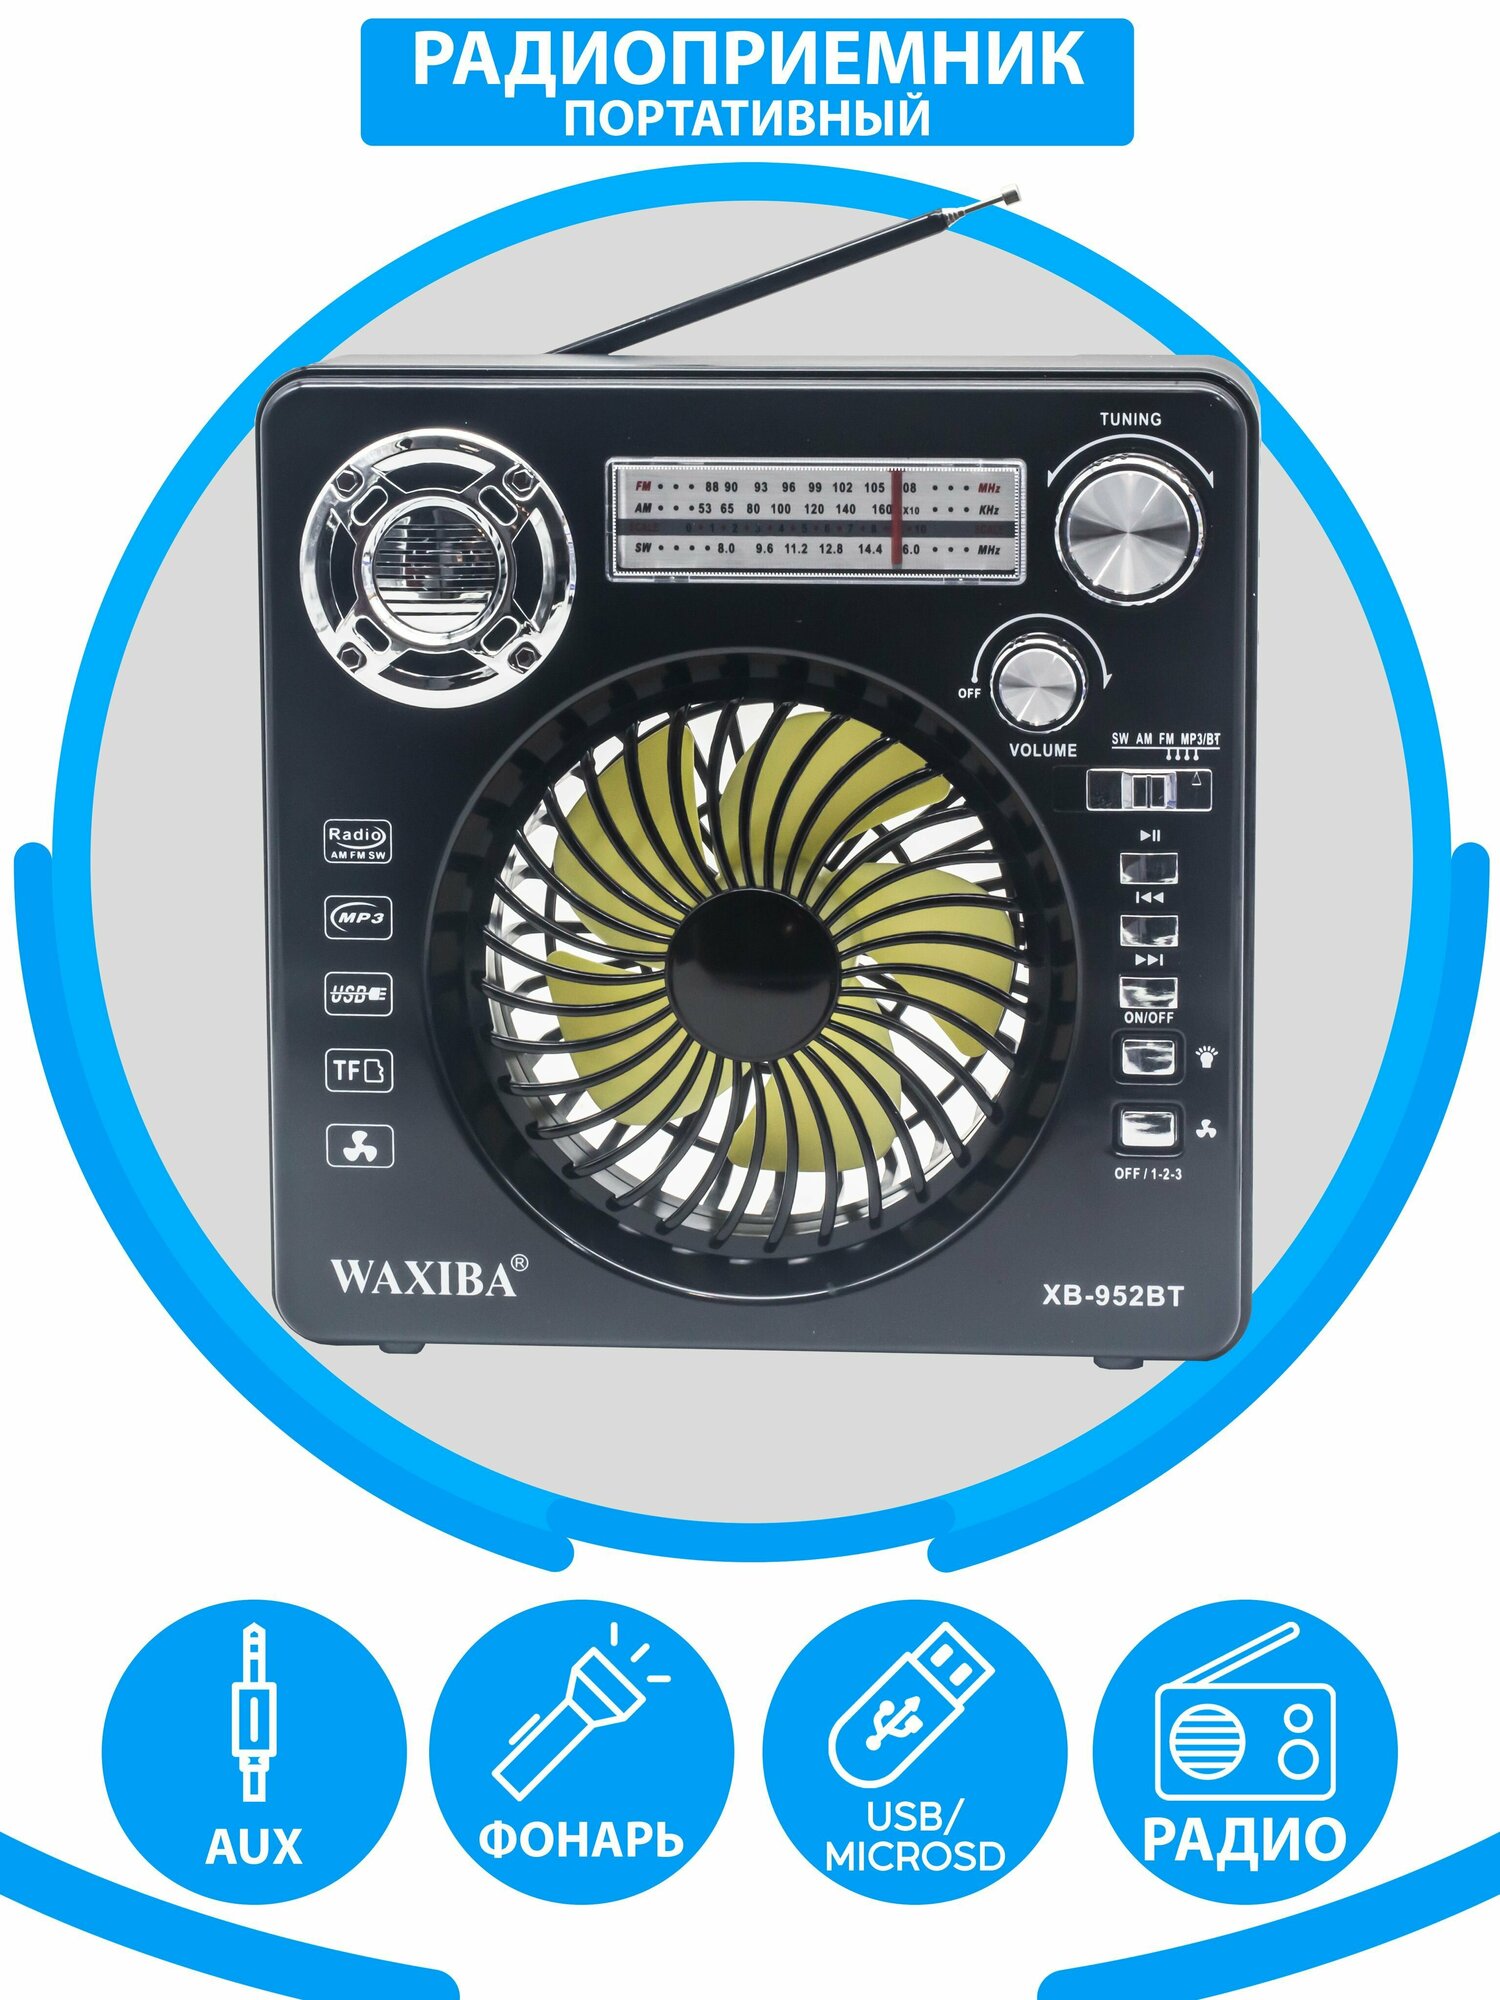 Радиоприемник в классическом стиле с Bluetooth и расширенным радио AM FM SW